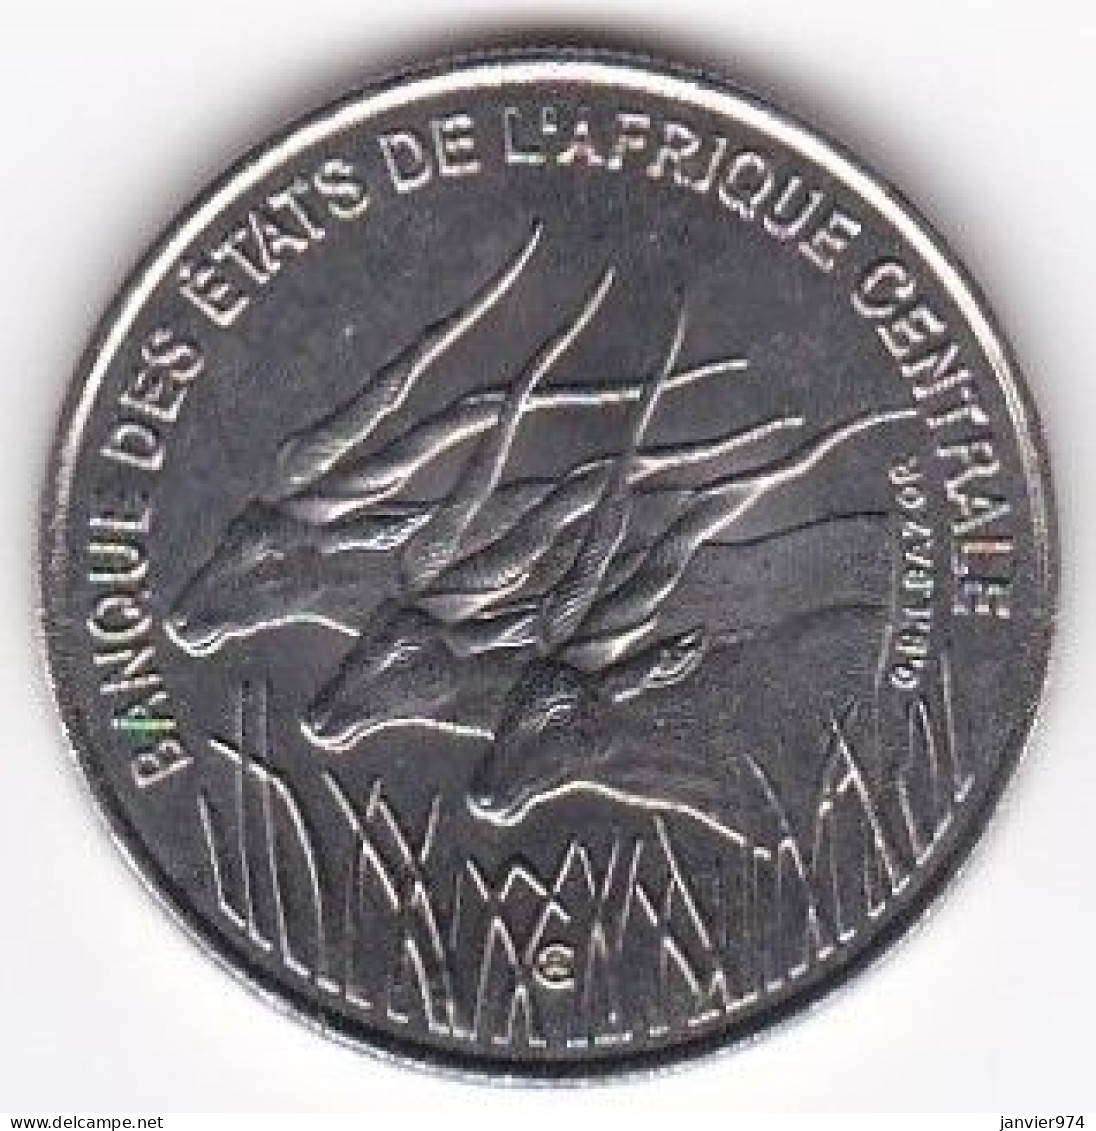 Banque Des Etats De L’Afrique Centrale (B.E.A.C.) 100 Francs 2003, En Nickel, KM# 13, SUP/ AU - Other - Africa